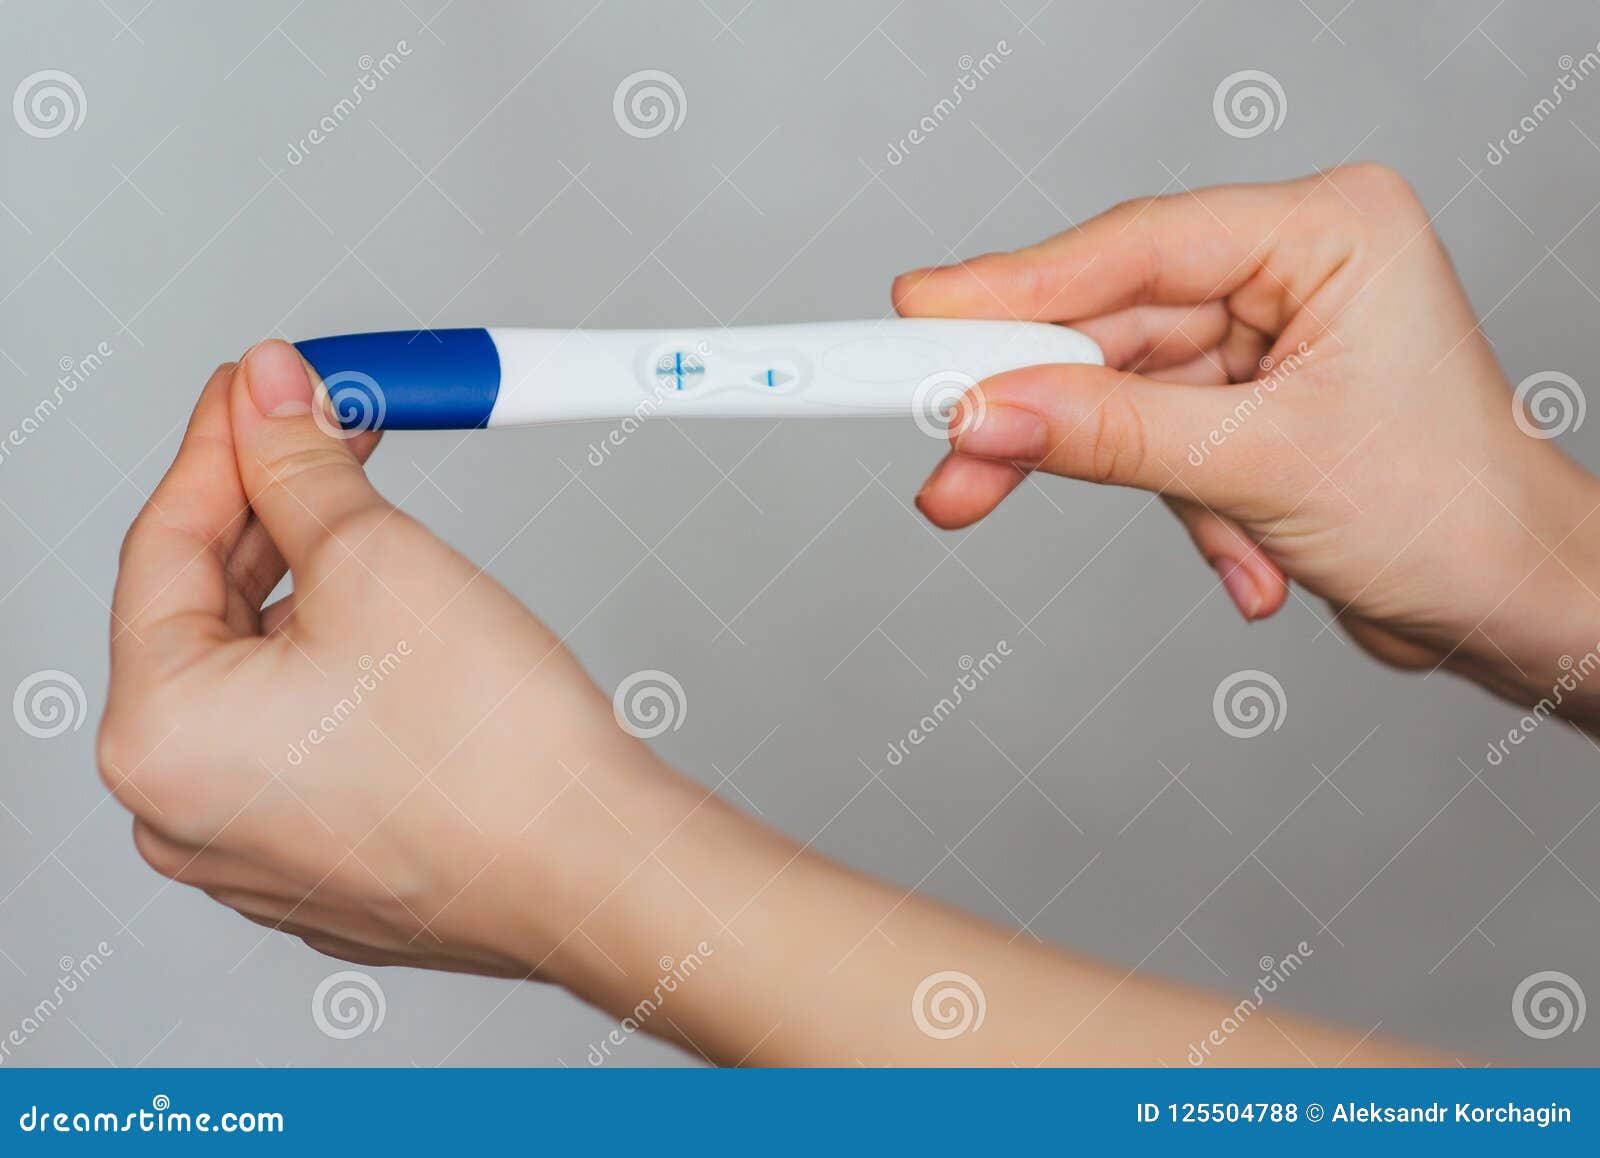 Тест на беременность телефоном